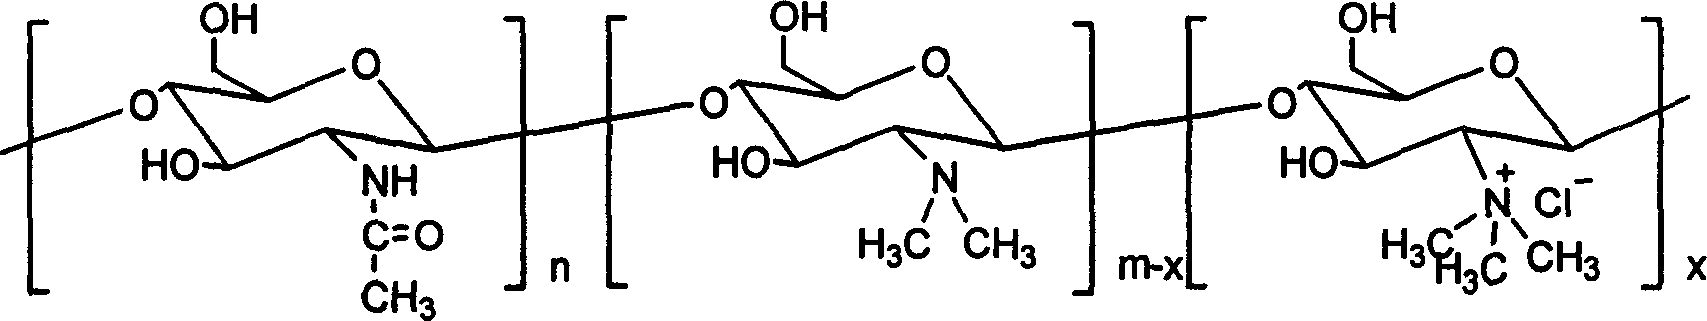 Chloro-N-trimethyl chitin hyamine